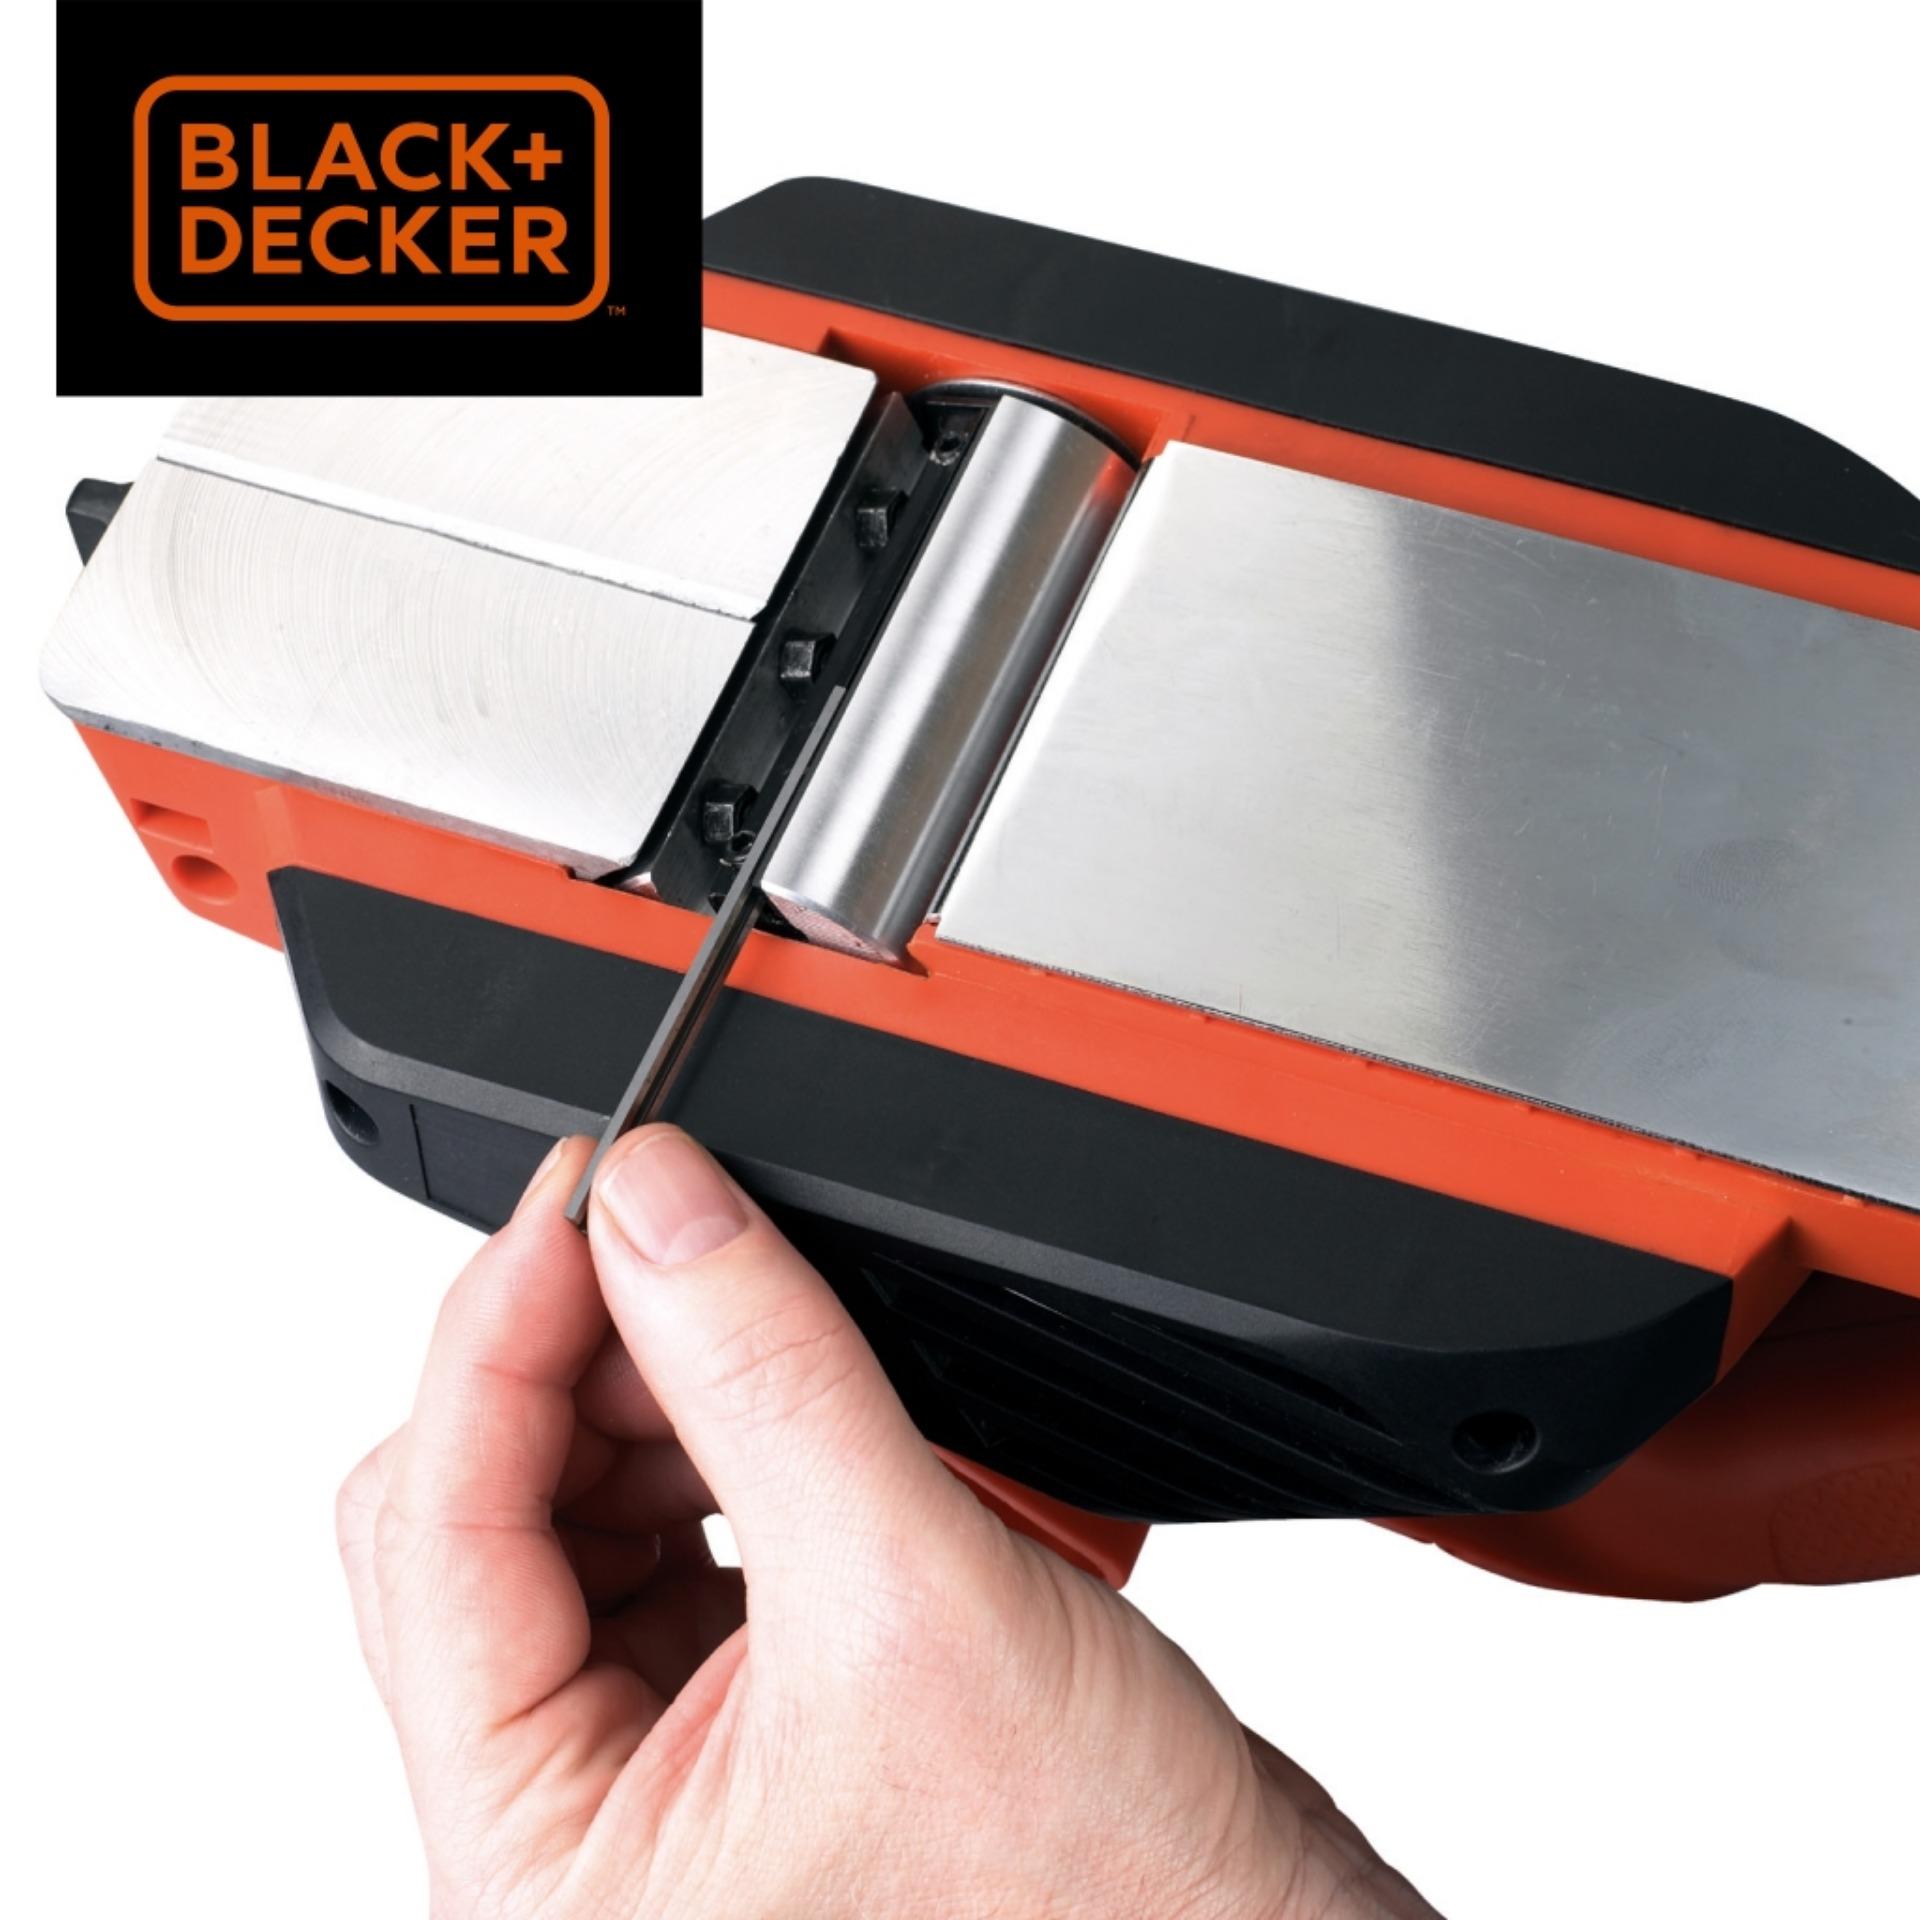 BLACK+DECKER KW712-QS 650W Wood Planer (Orange & Black)